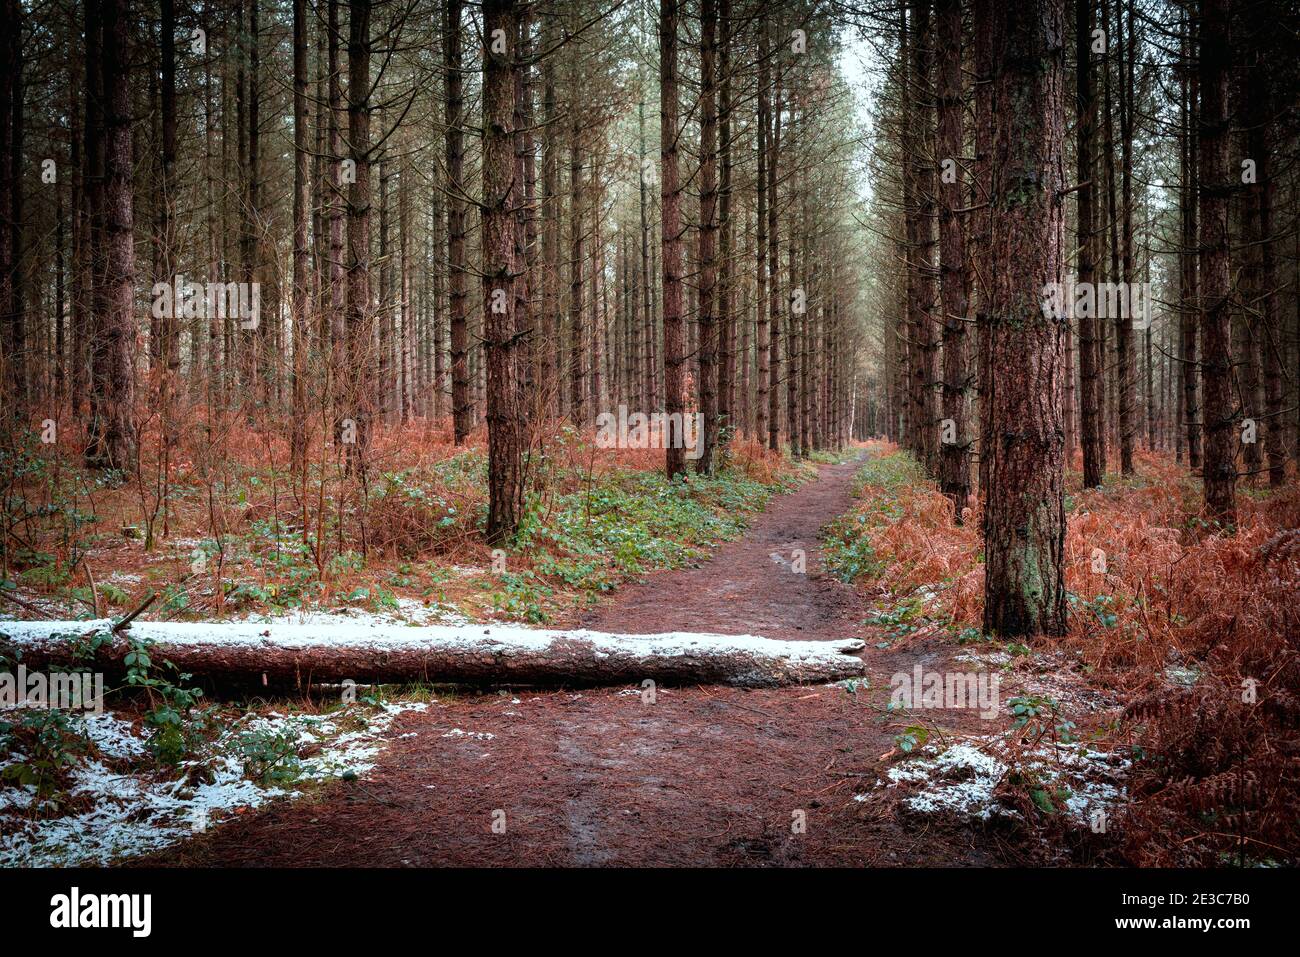 Une forêt de pins avec une poussière de neige sur le sol. Blidworth Woods, Nottingham, Angleterre, Royaume-Uni Banque D'Images